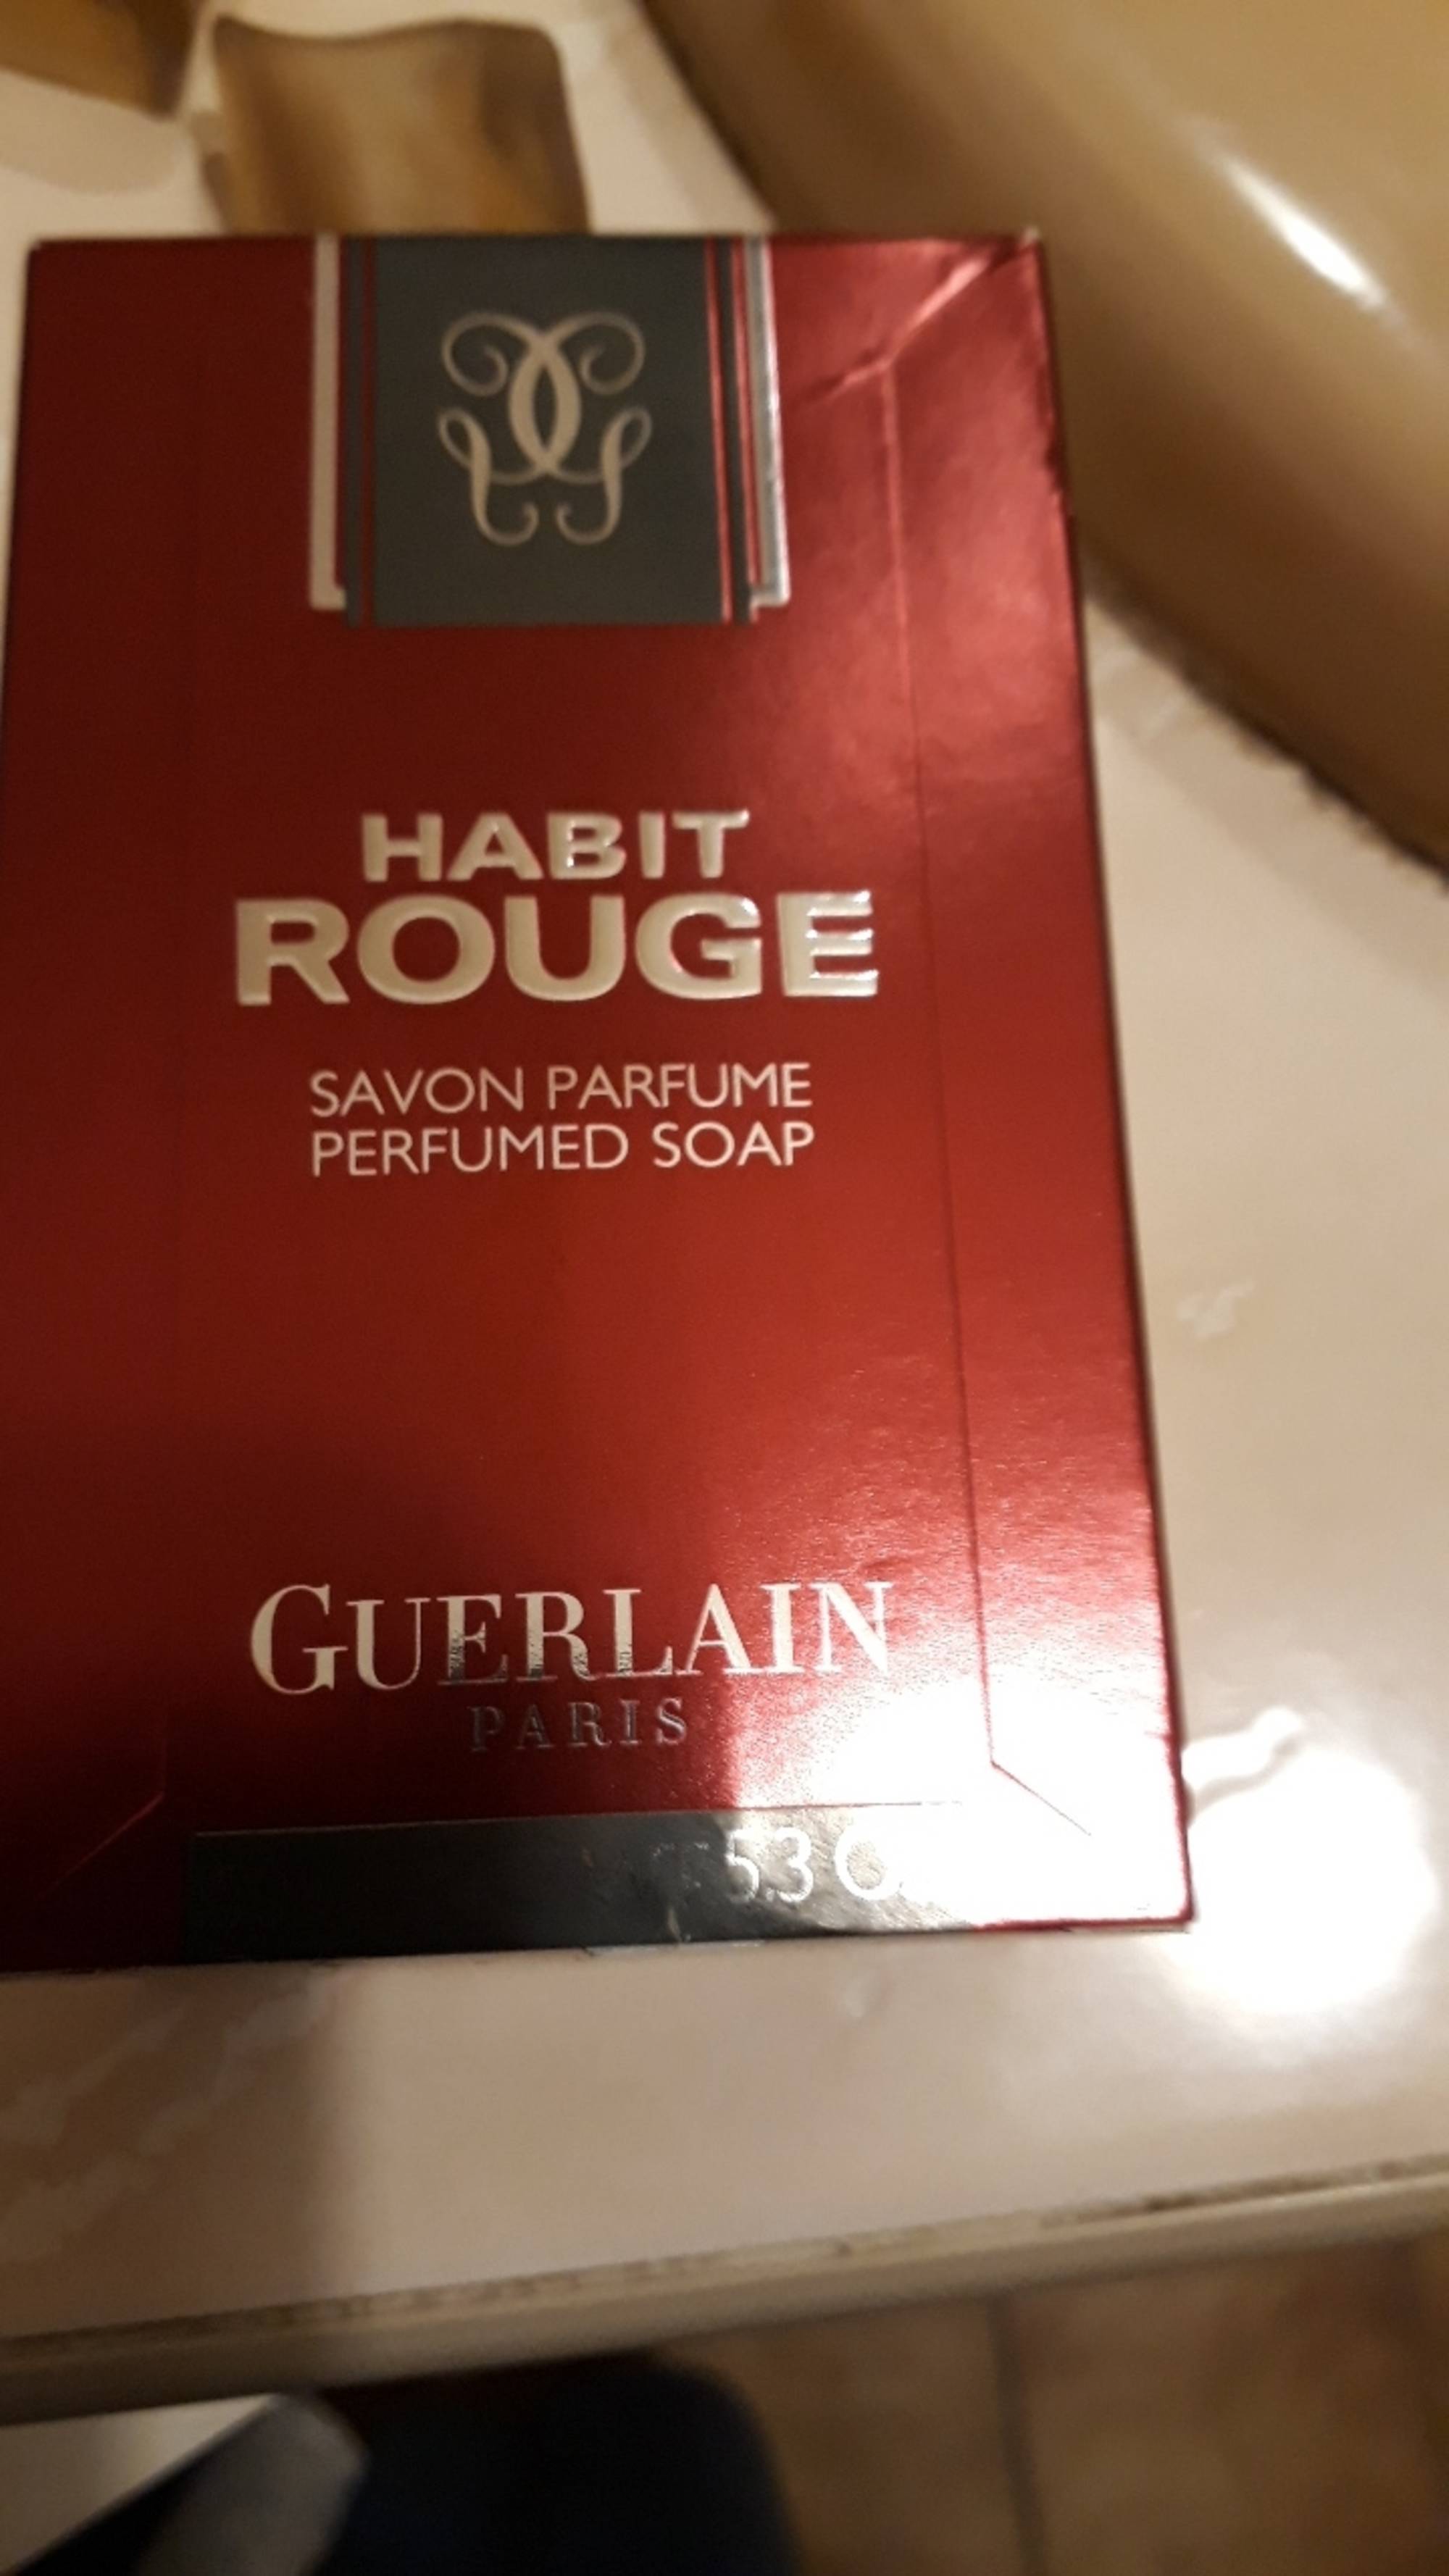 GUERLAIN - Habit rouge - Savon parfumé